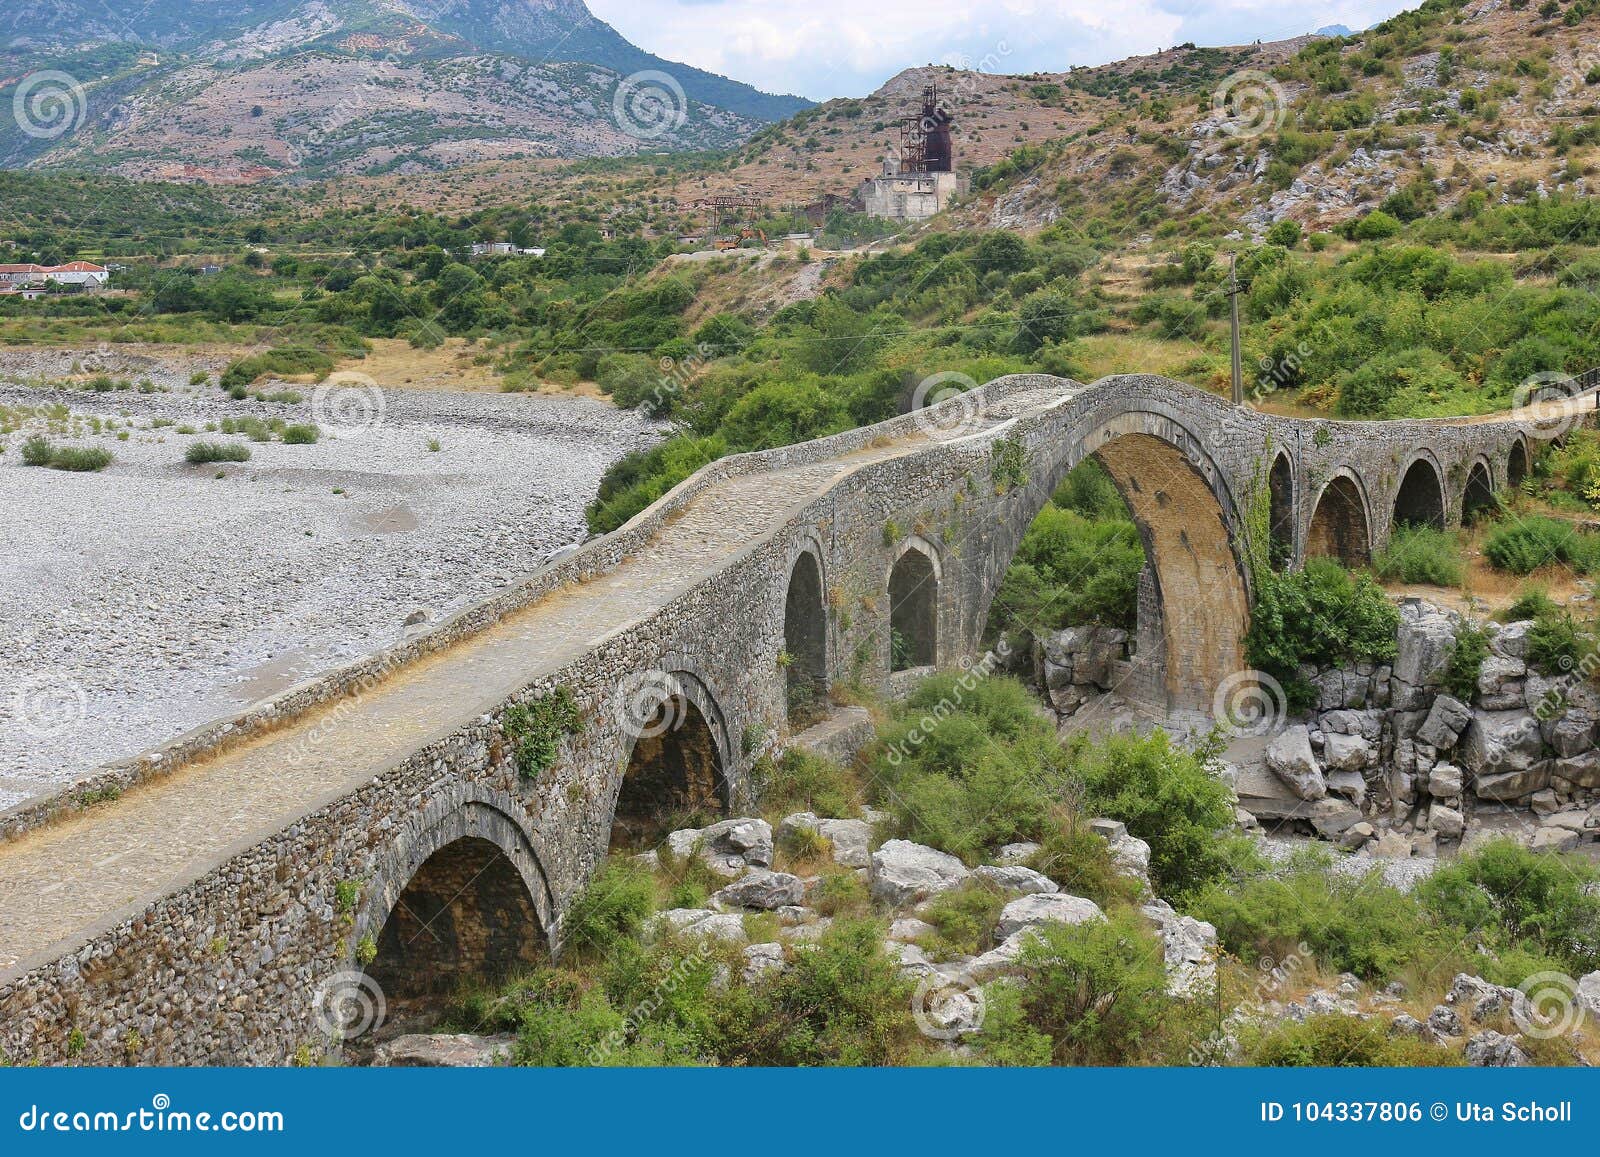 the famous mesi bridge in mes, albania.